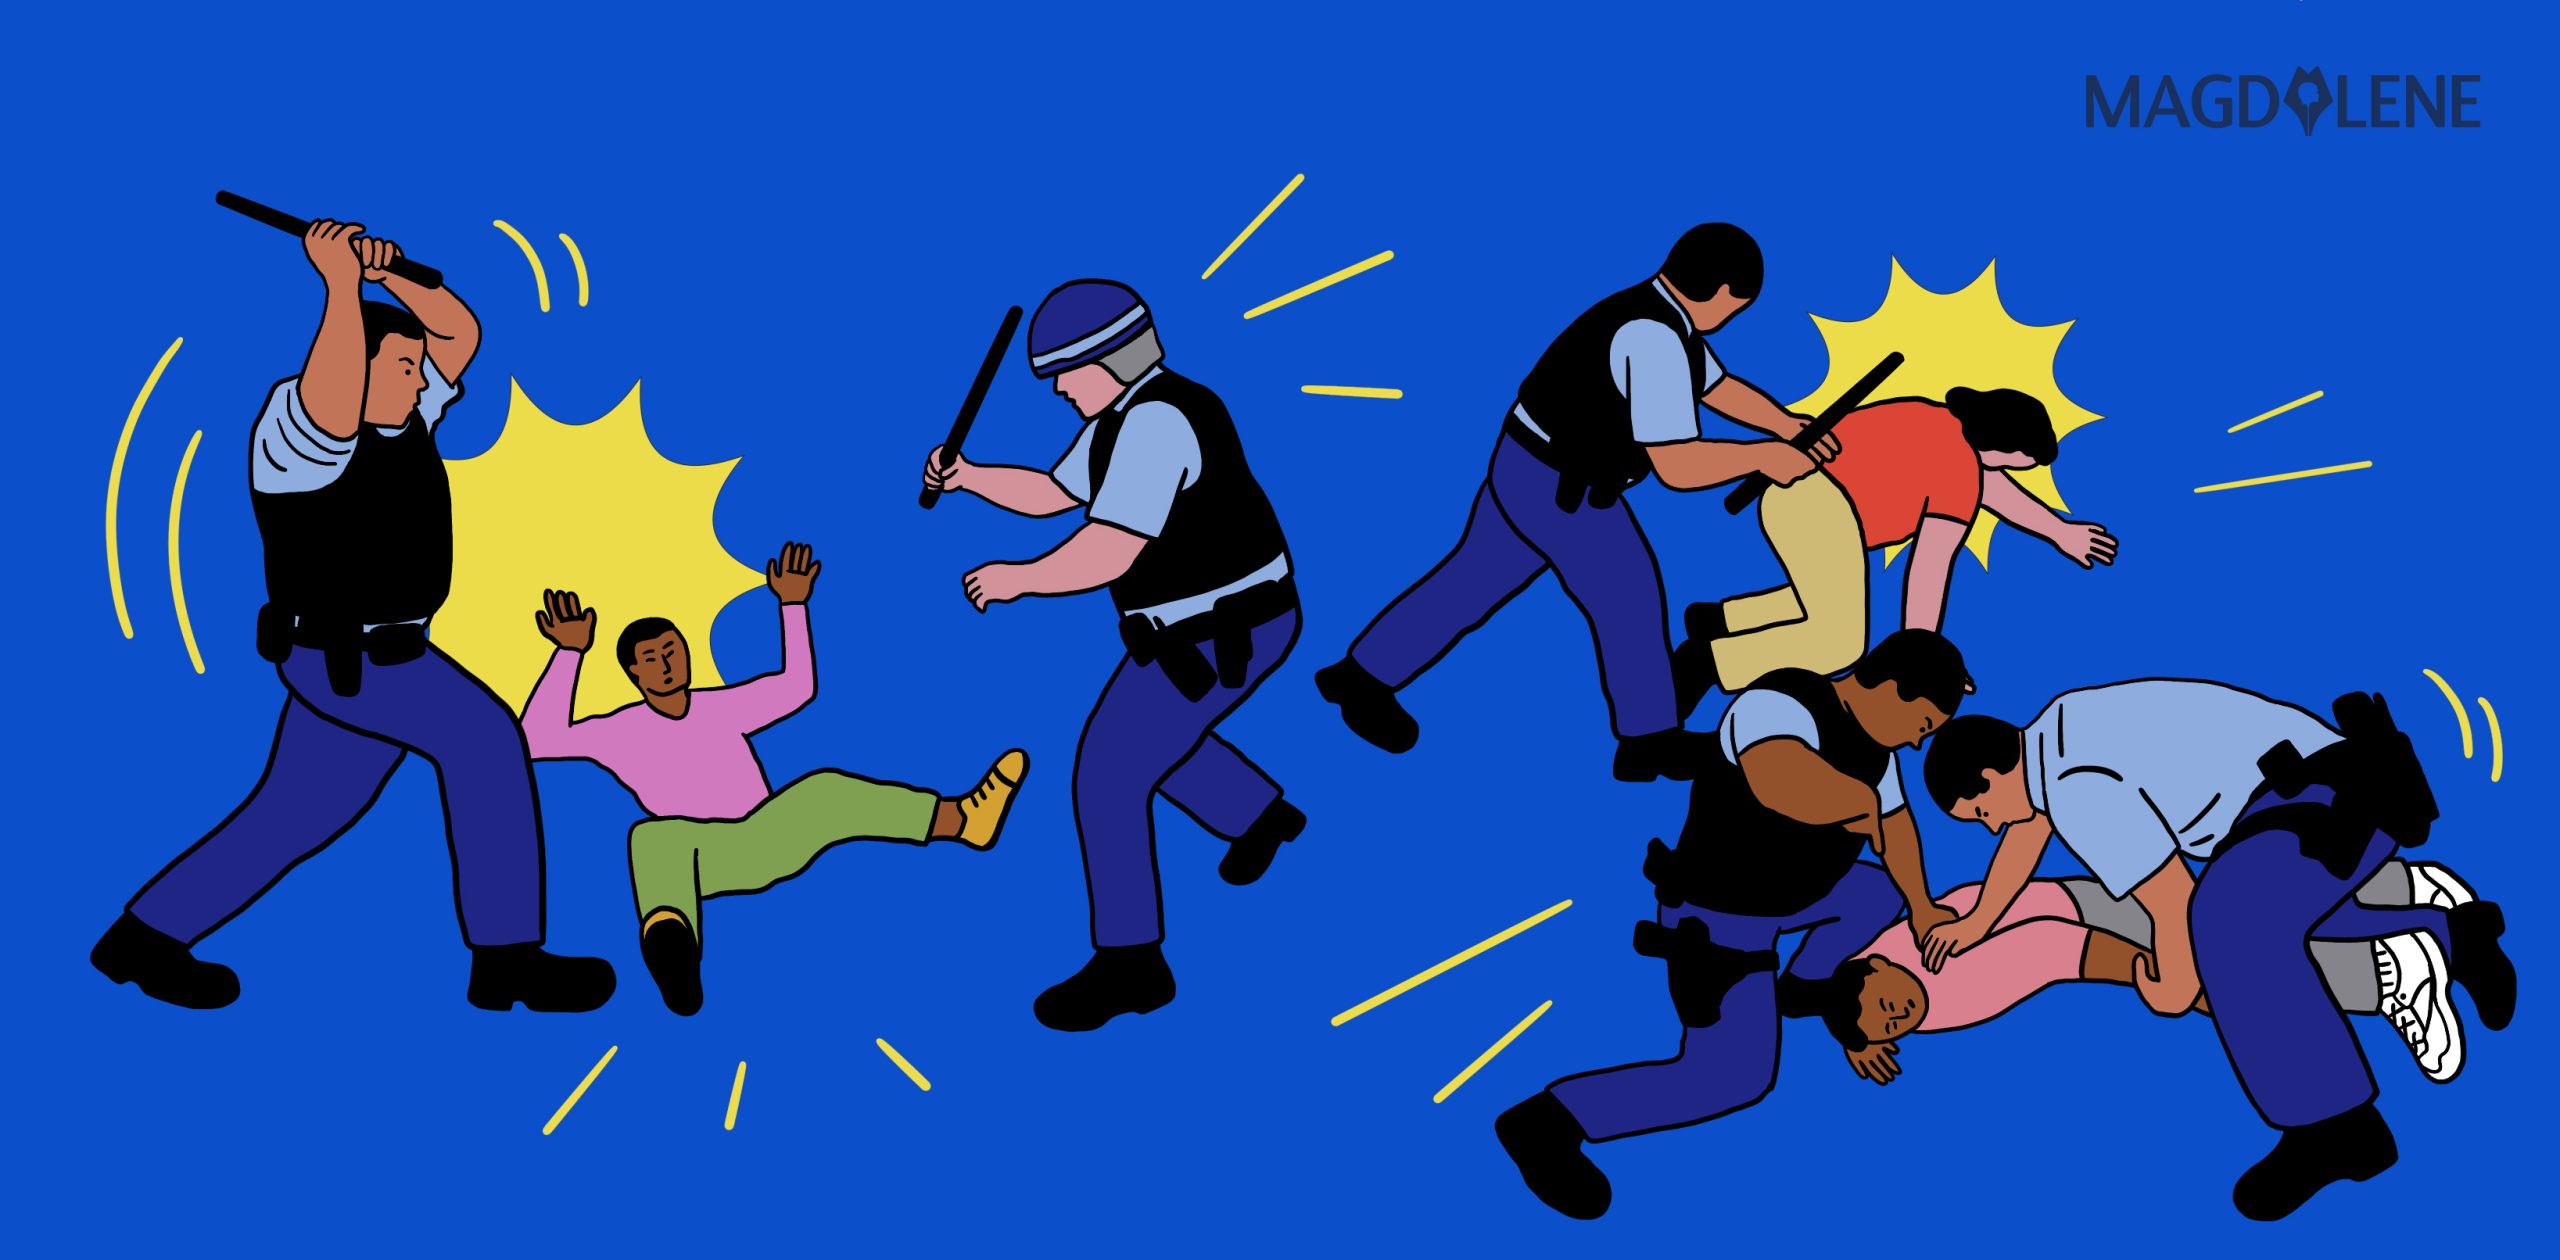 Heboh Tragedi Arema, Kenapa Polisi Suka Bertindak Represif?